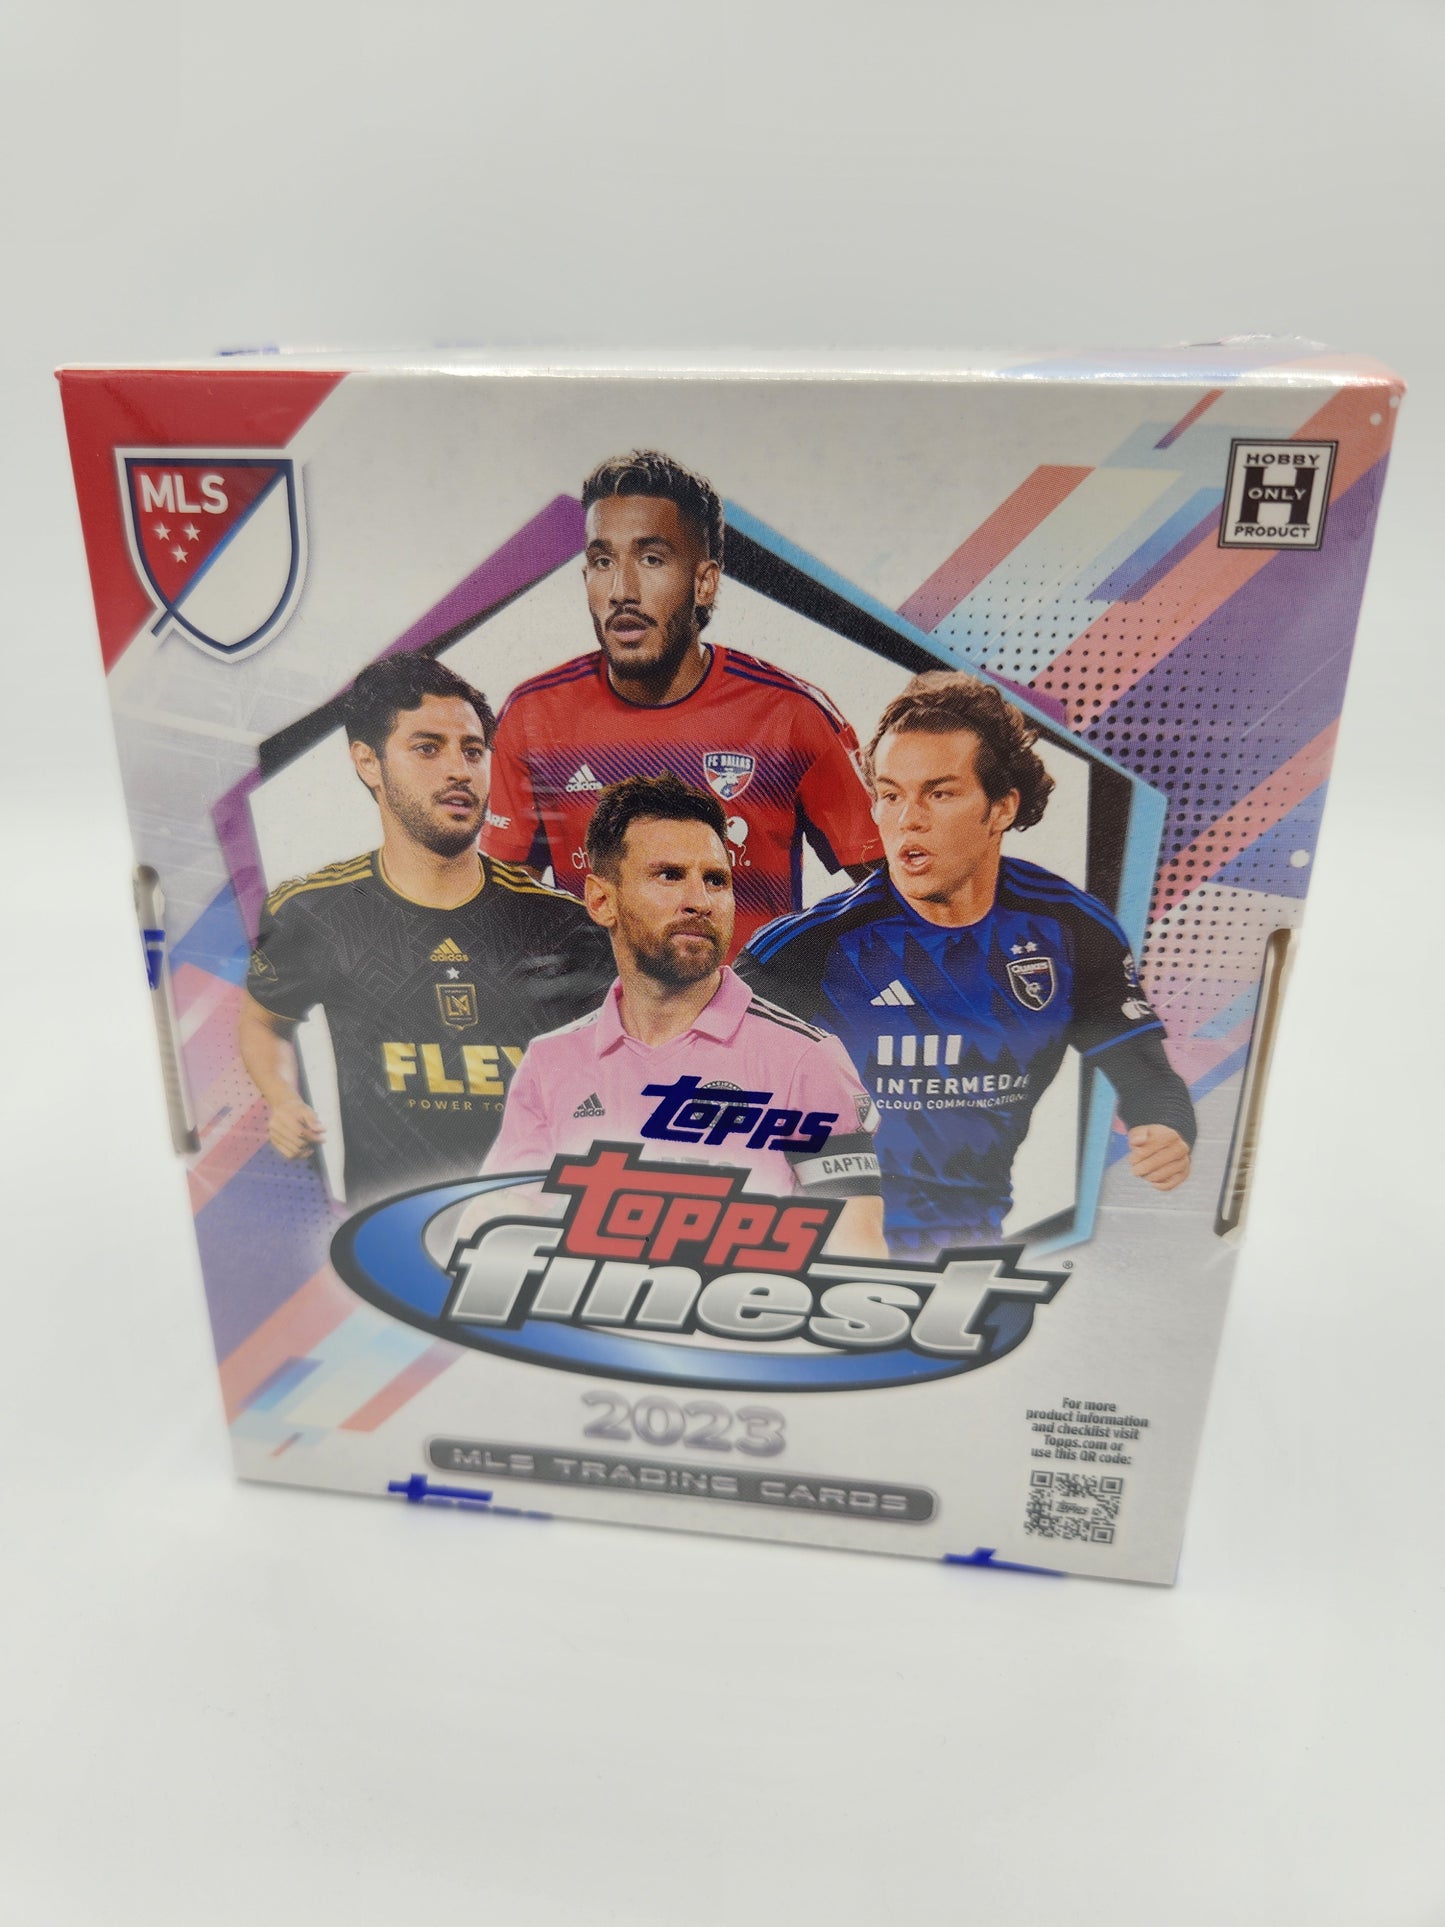 (2023) Topps Finest MLS Hobby Box